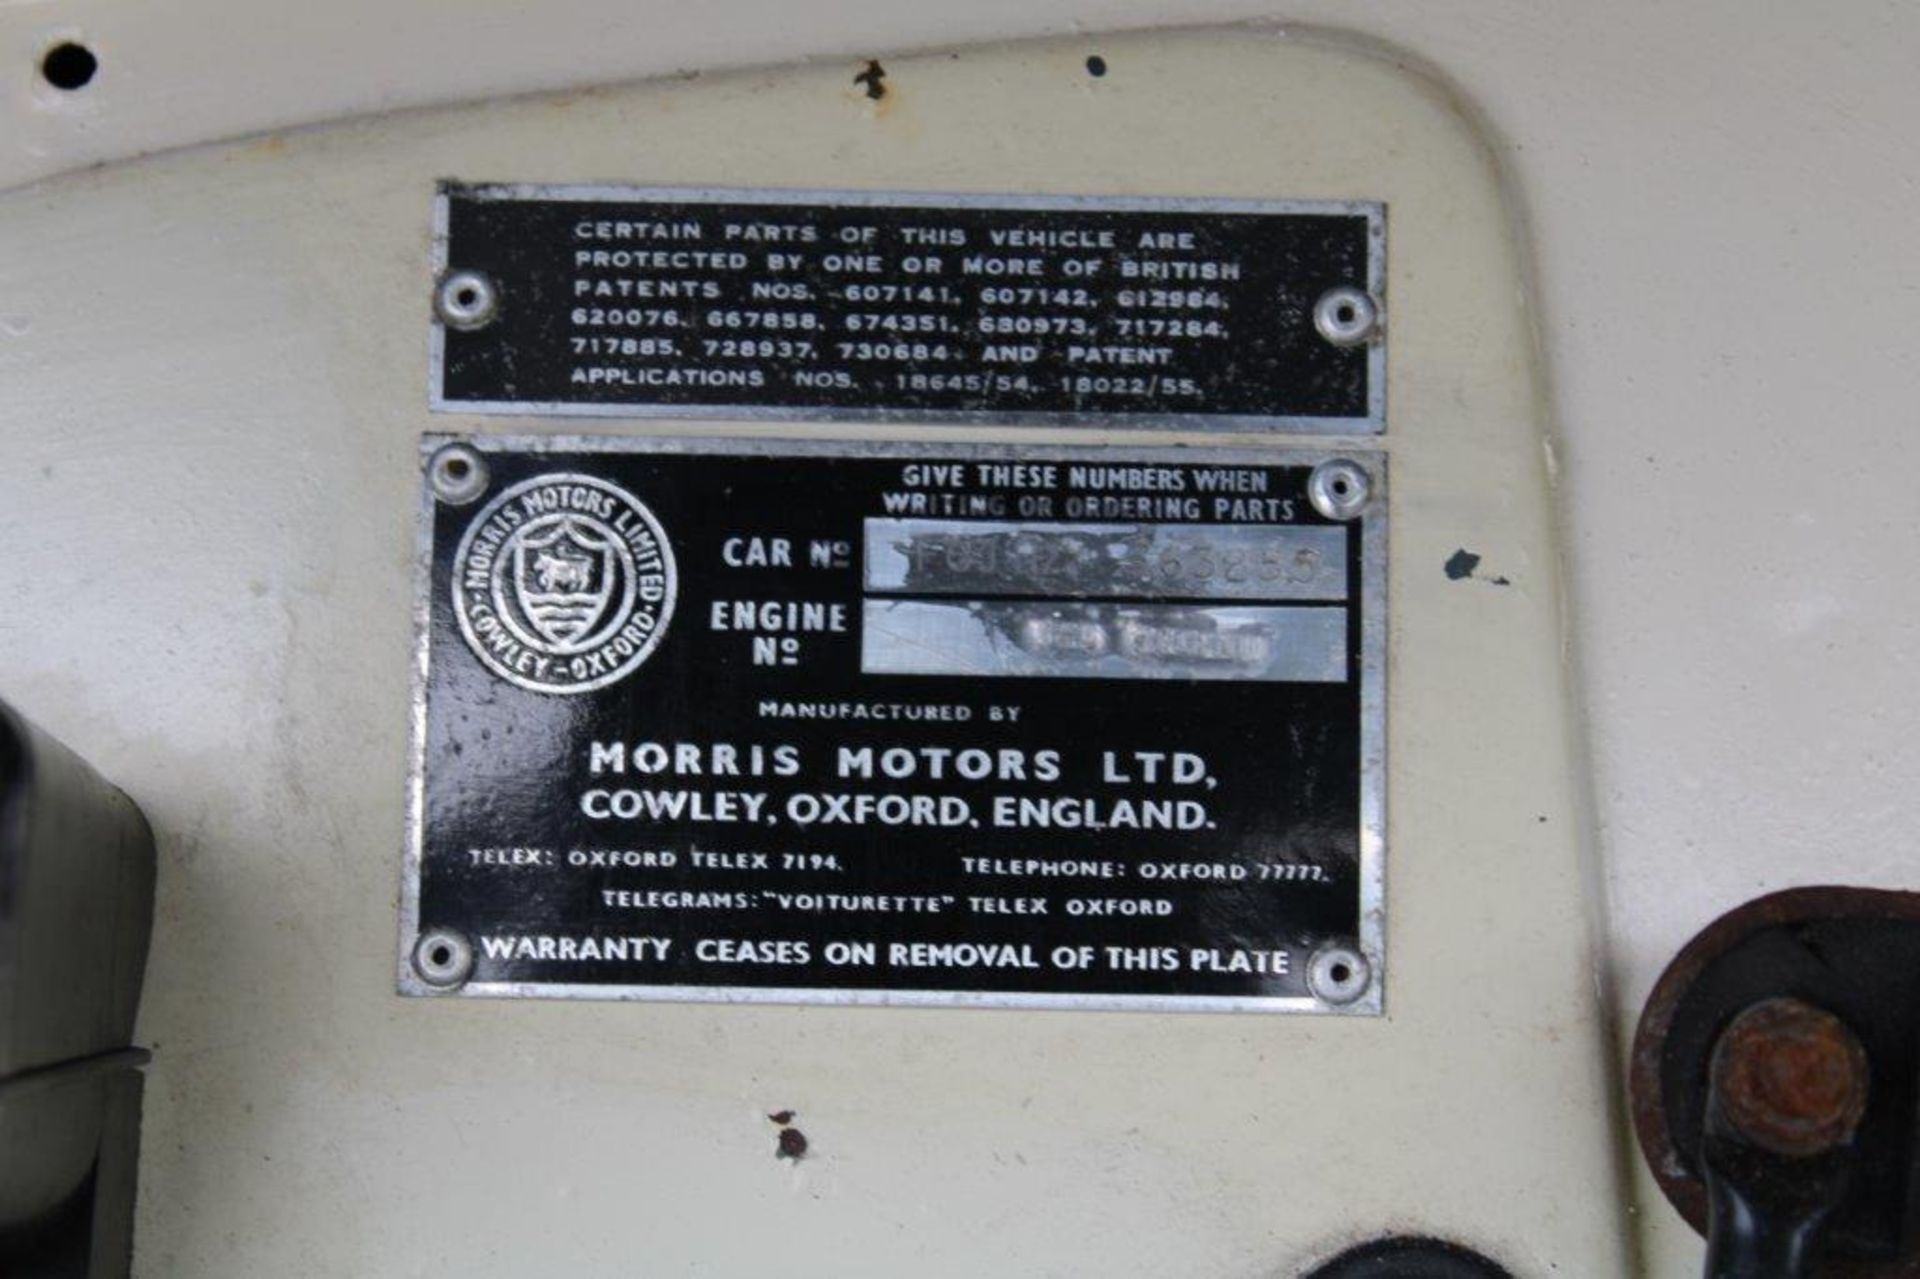 1958 Morris Minor 1000 Convertible - Image 21 of 38